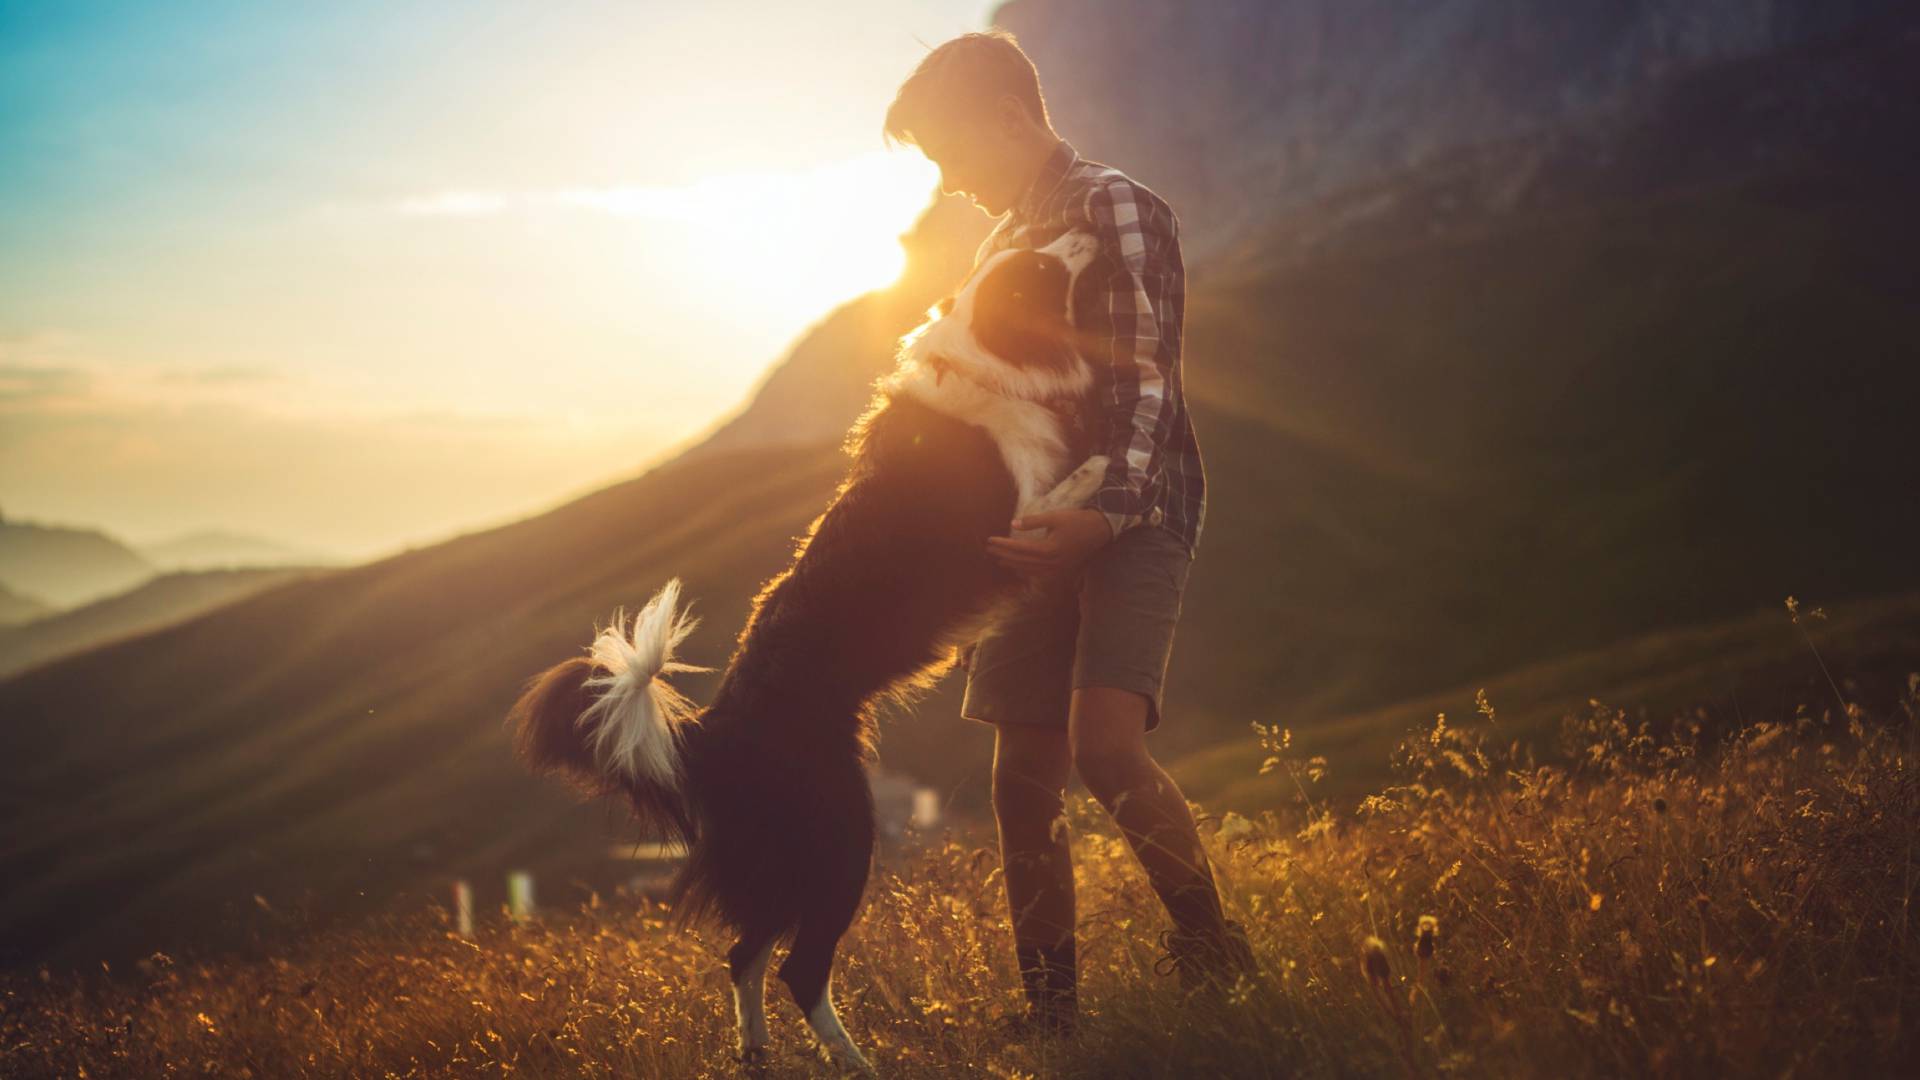 Urlaub mit Hund in den Bergen - Hund und Besitzer genießen den Sonnenuntergang